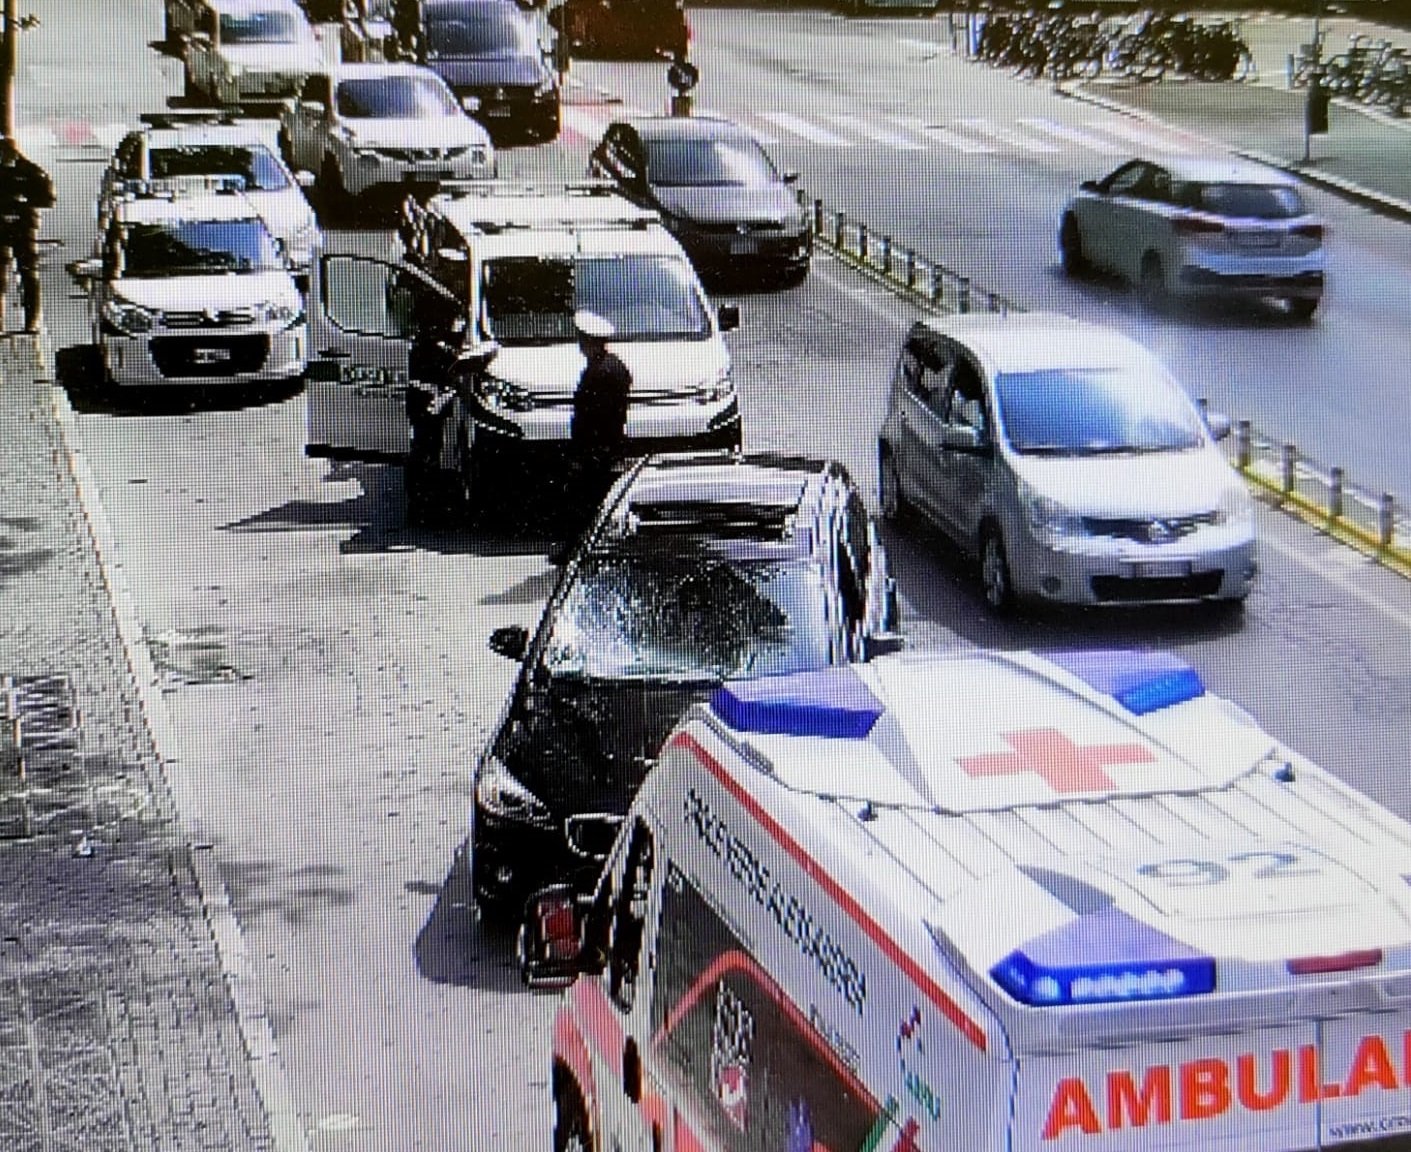 Ragazzo di 23 anni investito da un’auto sulle strisce pedonali davanti alla stazione di Alessandria